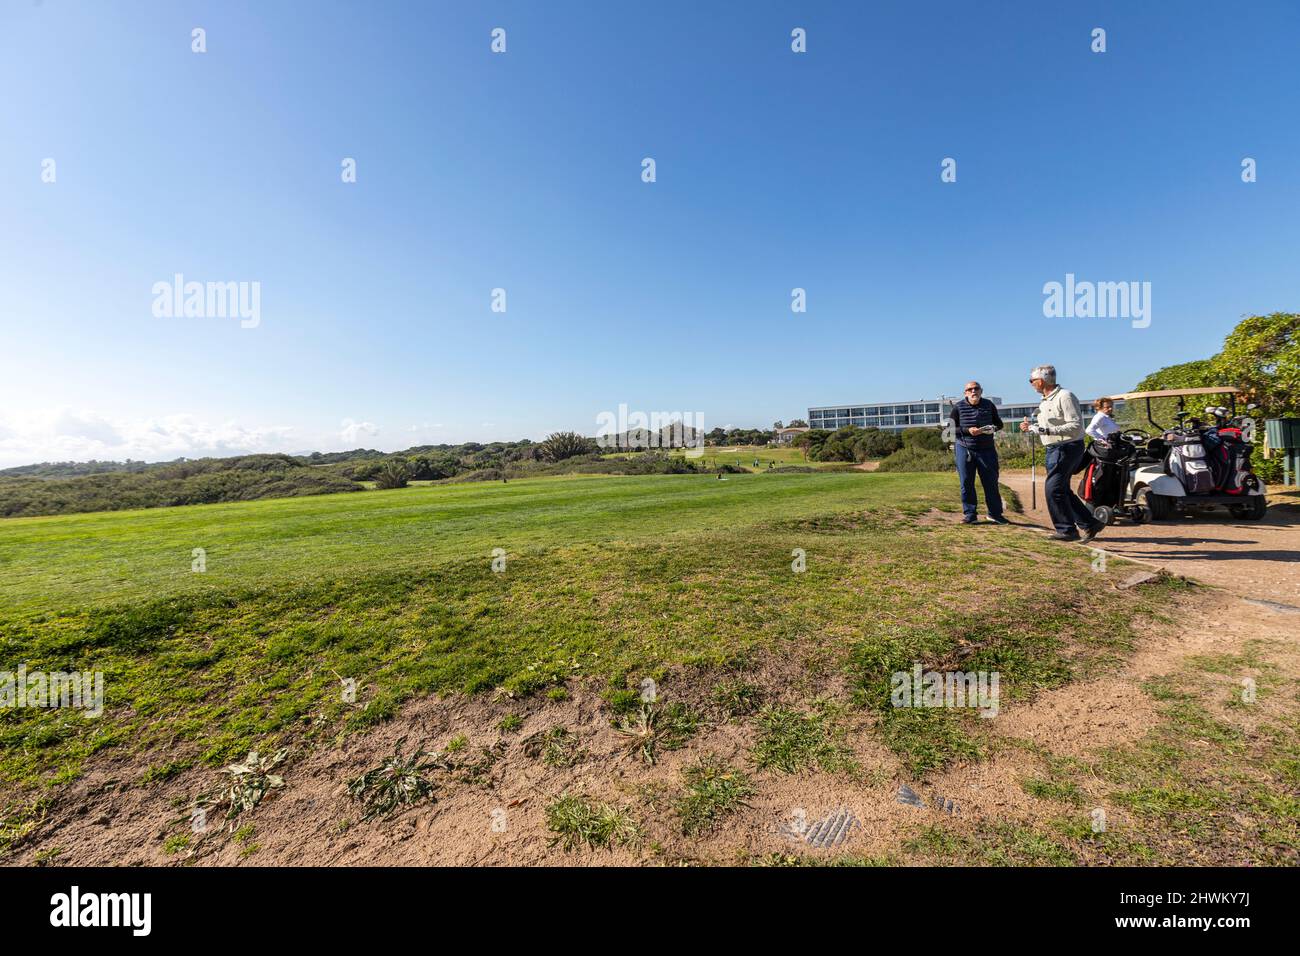 Les golfeurs jouent au golf dans un parcours près du Parador Nacional de El Saler, El Saler, province de Valence, Espagne Banque D'Images